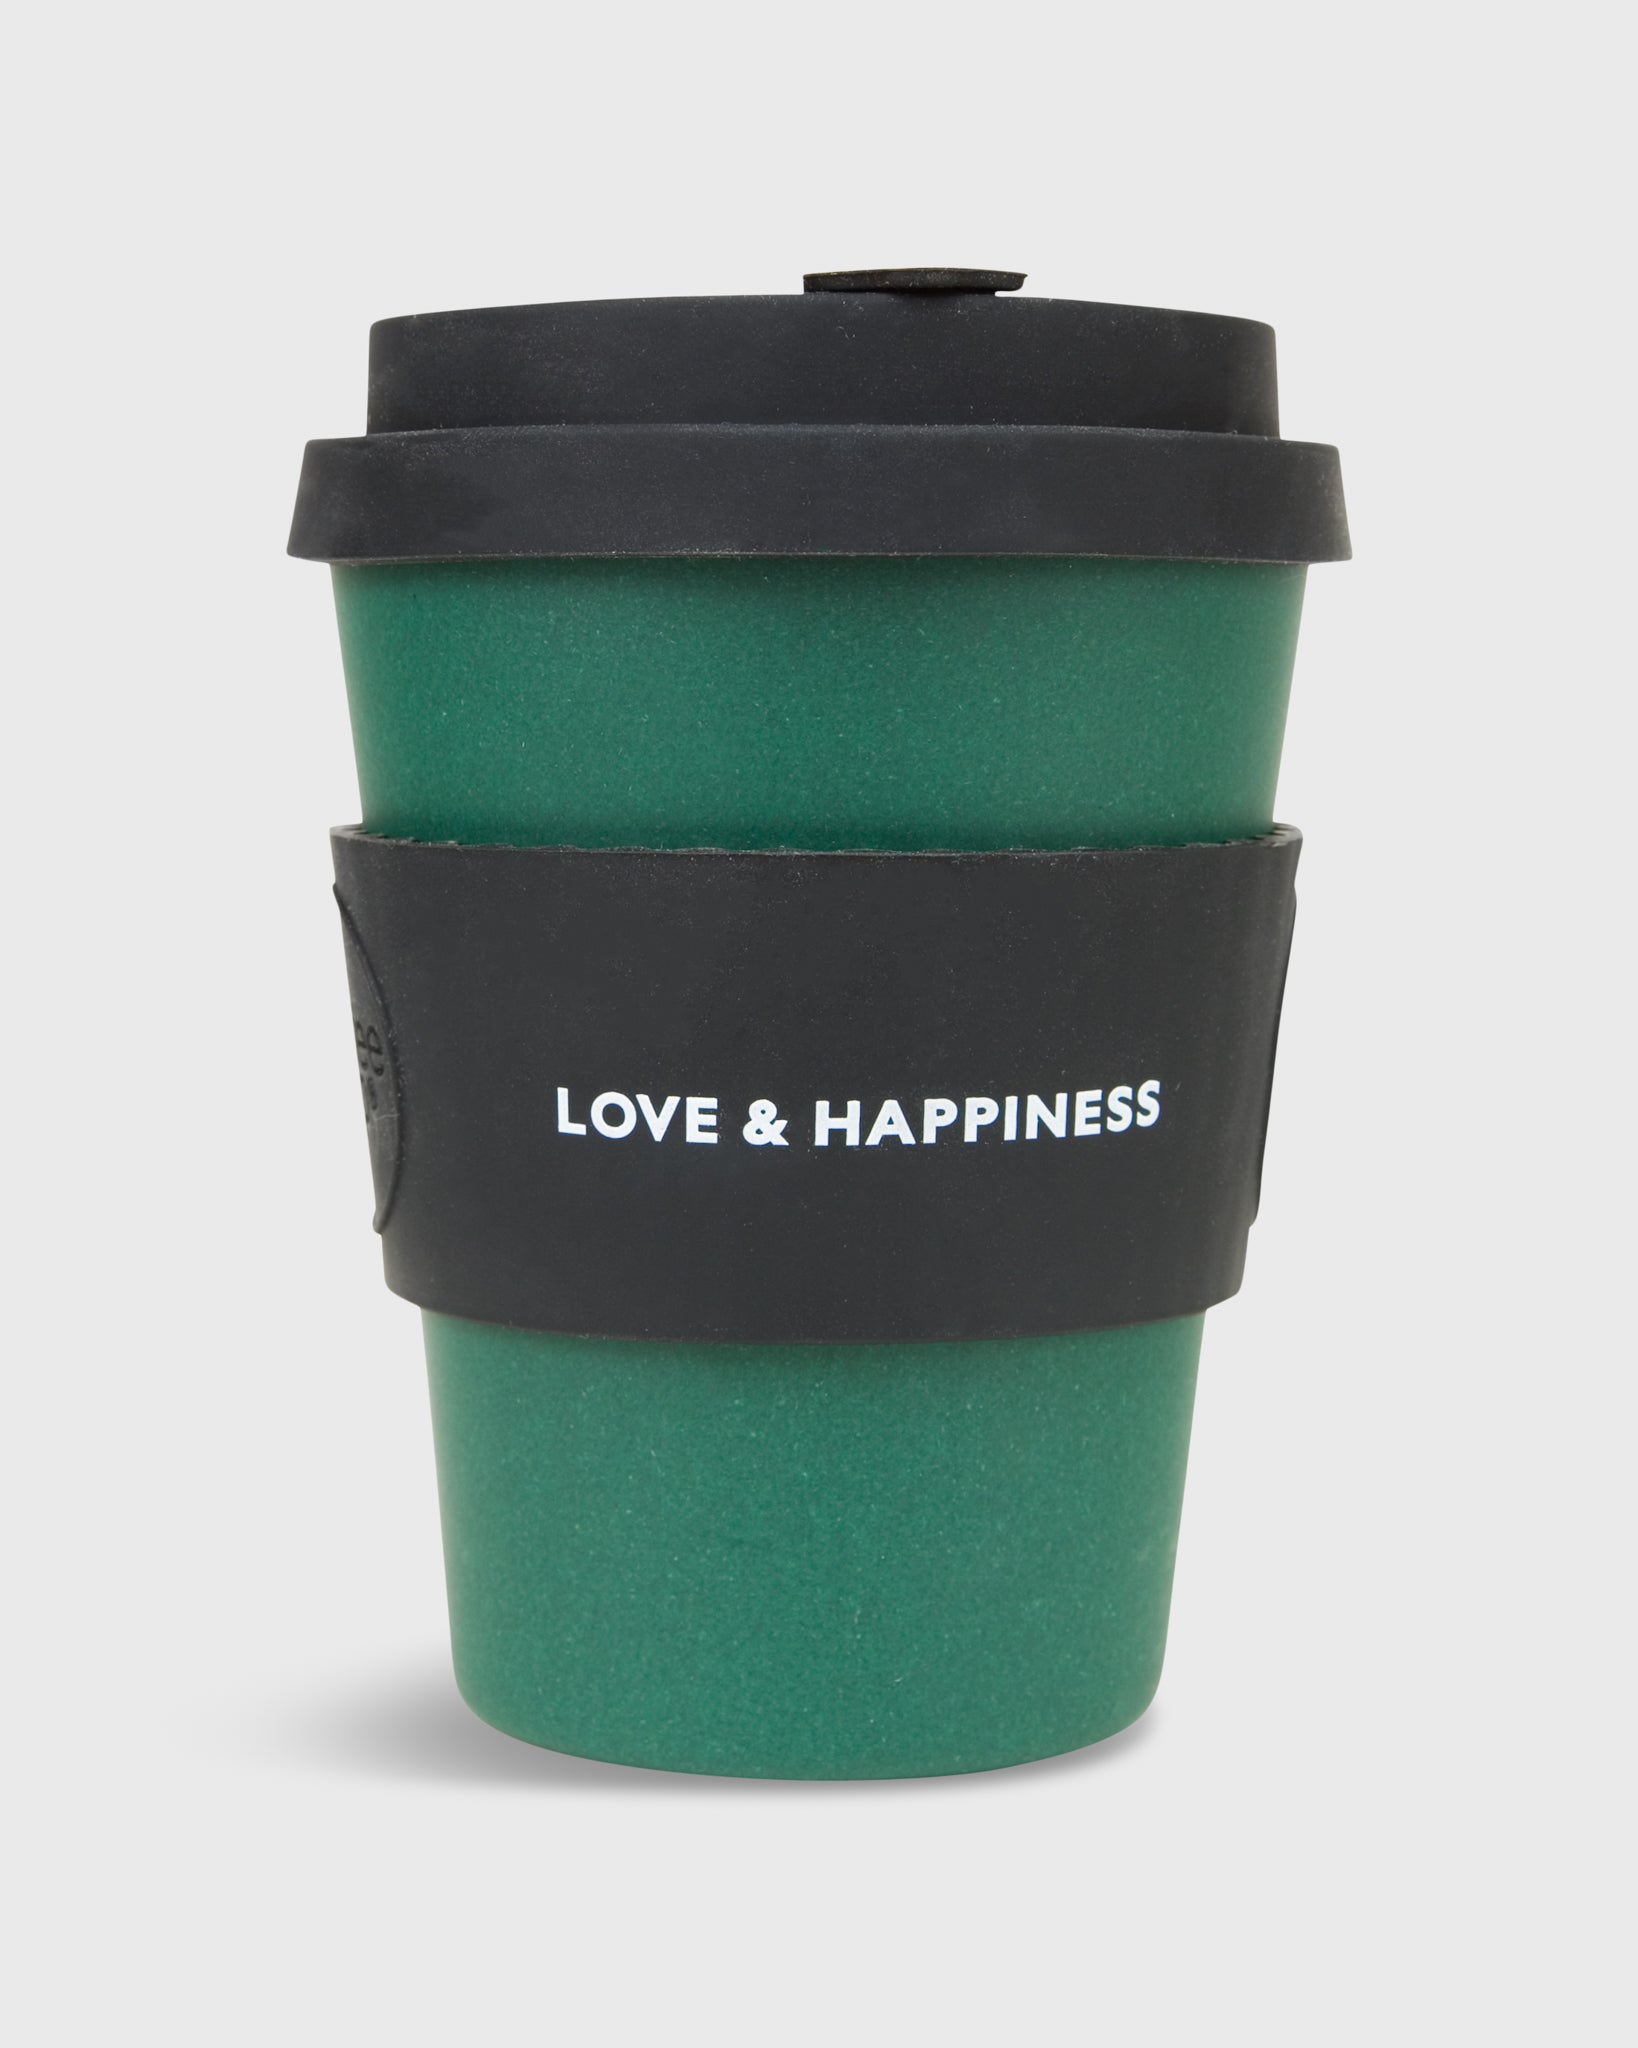 12 oz. Reusable Coffee Cup Green/Black